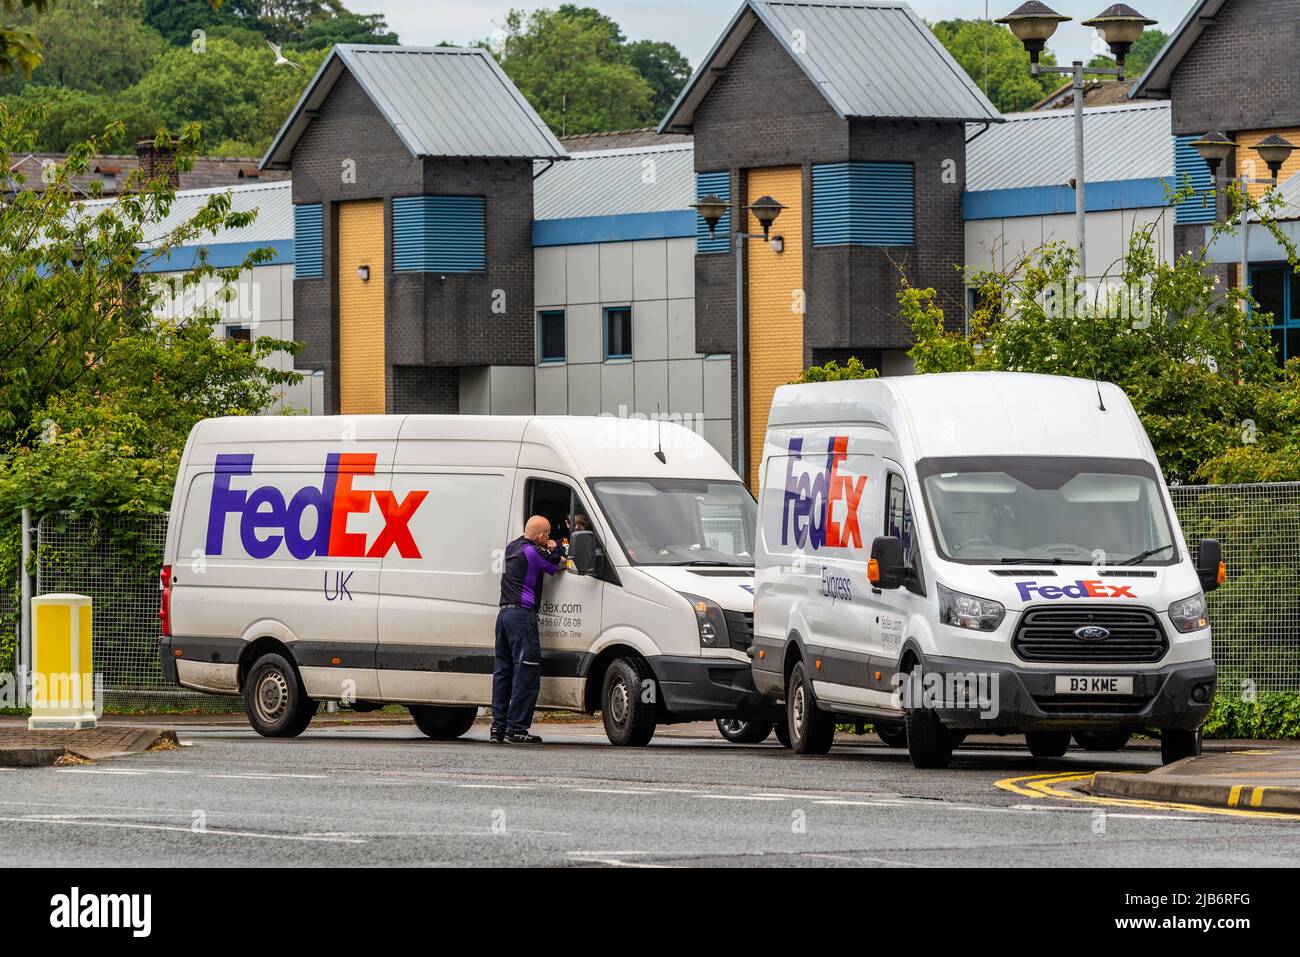 Due furgoni FedEx parcheggiati a Lincoln, Lincolnshire, Regno Unito. Foto Stock